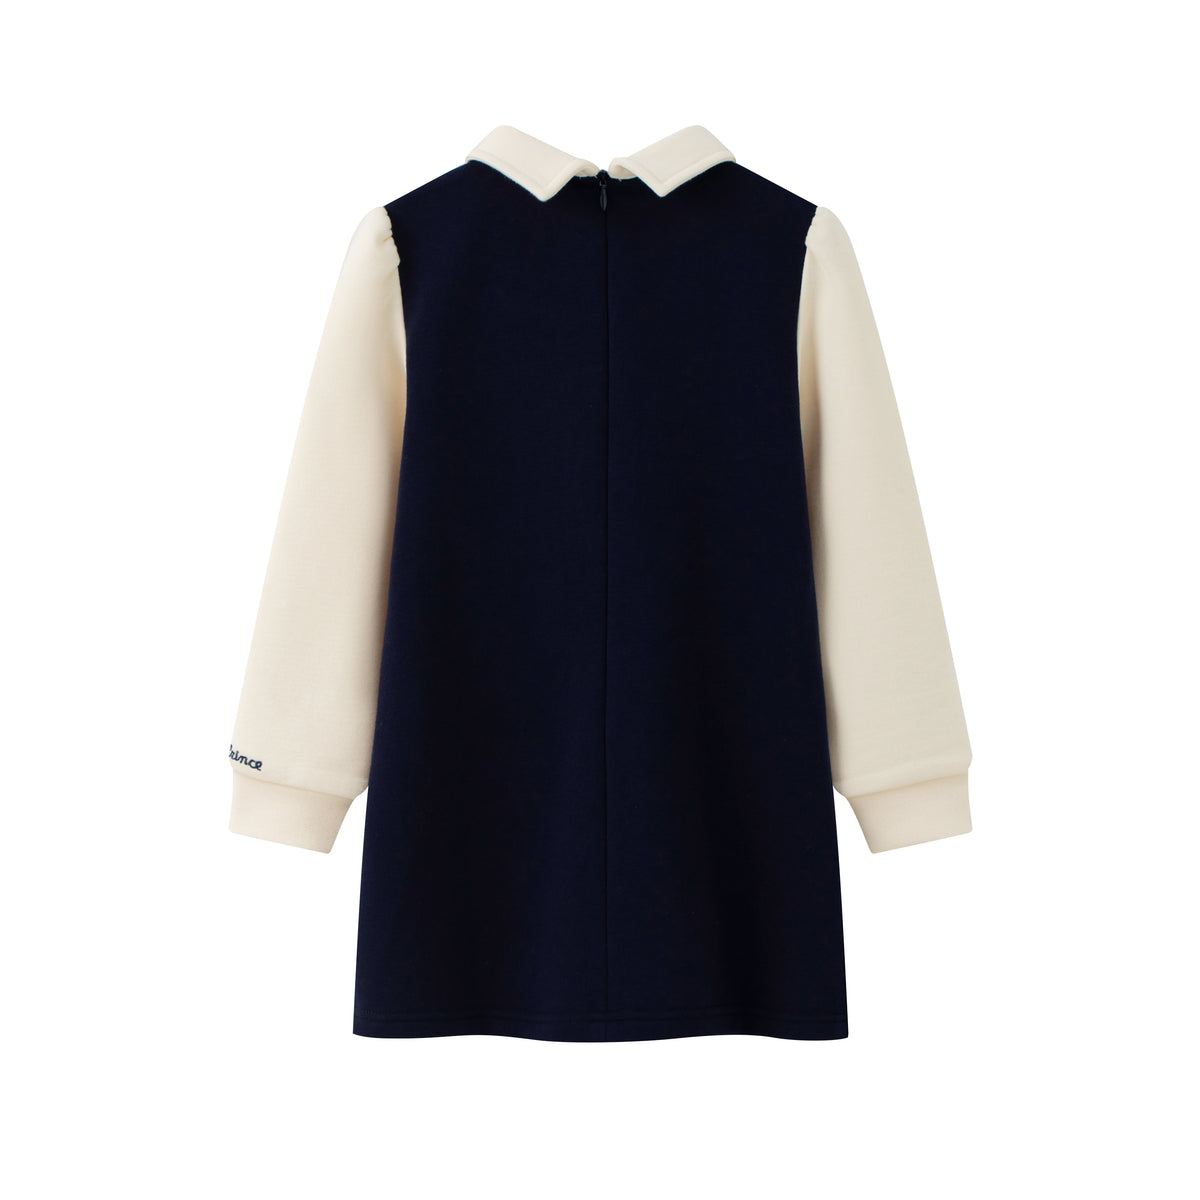 Vauva x Le Petit Prince - Girls Long Sleeve Dress-product image back